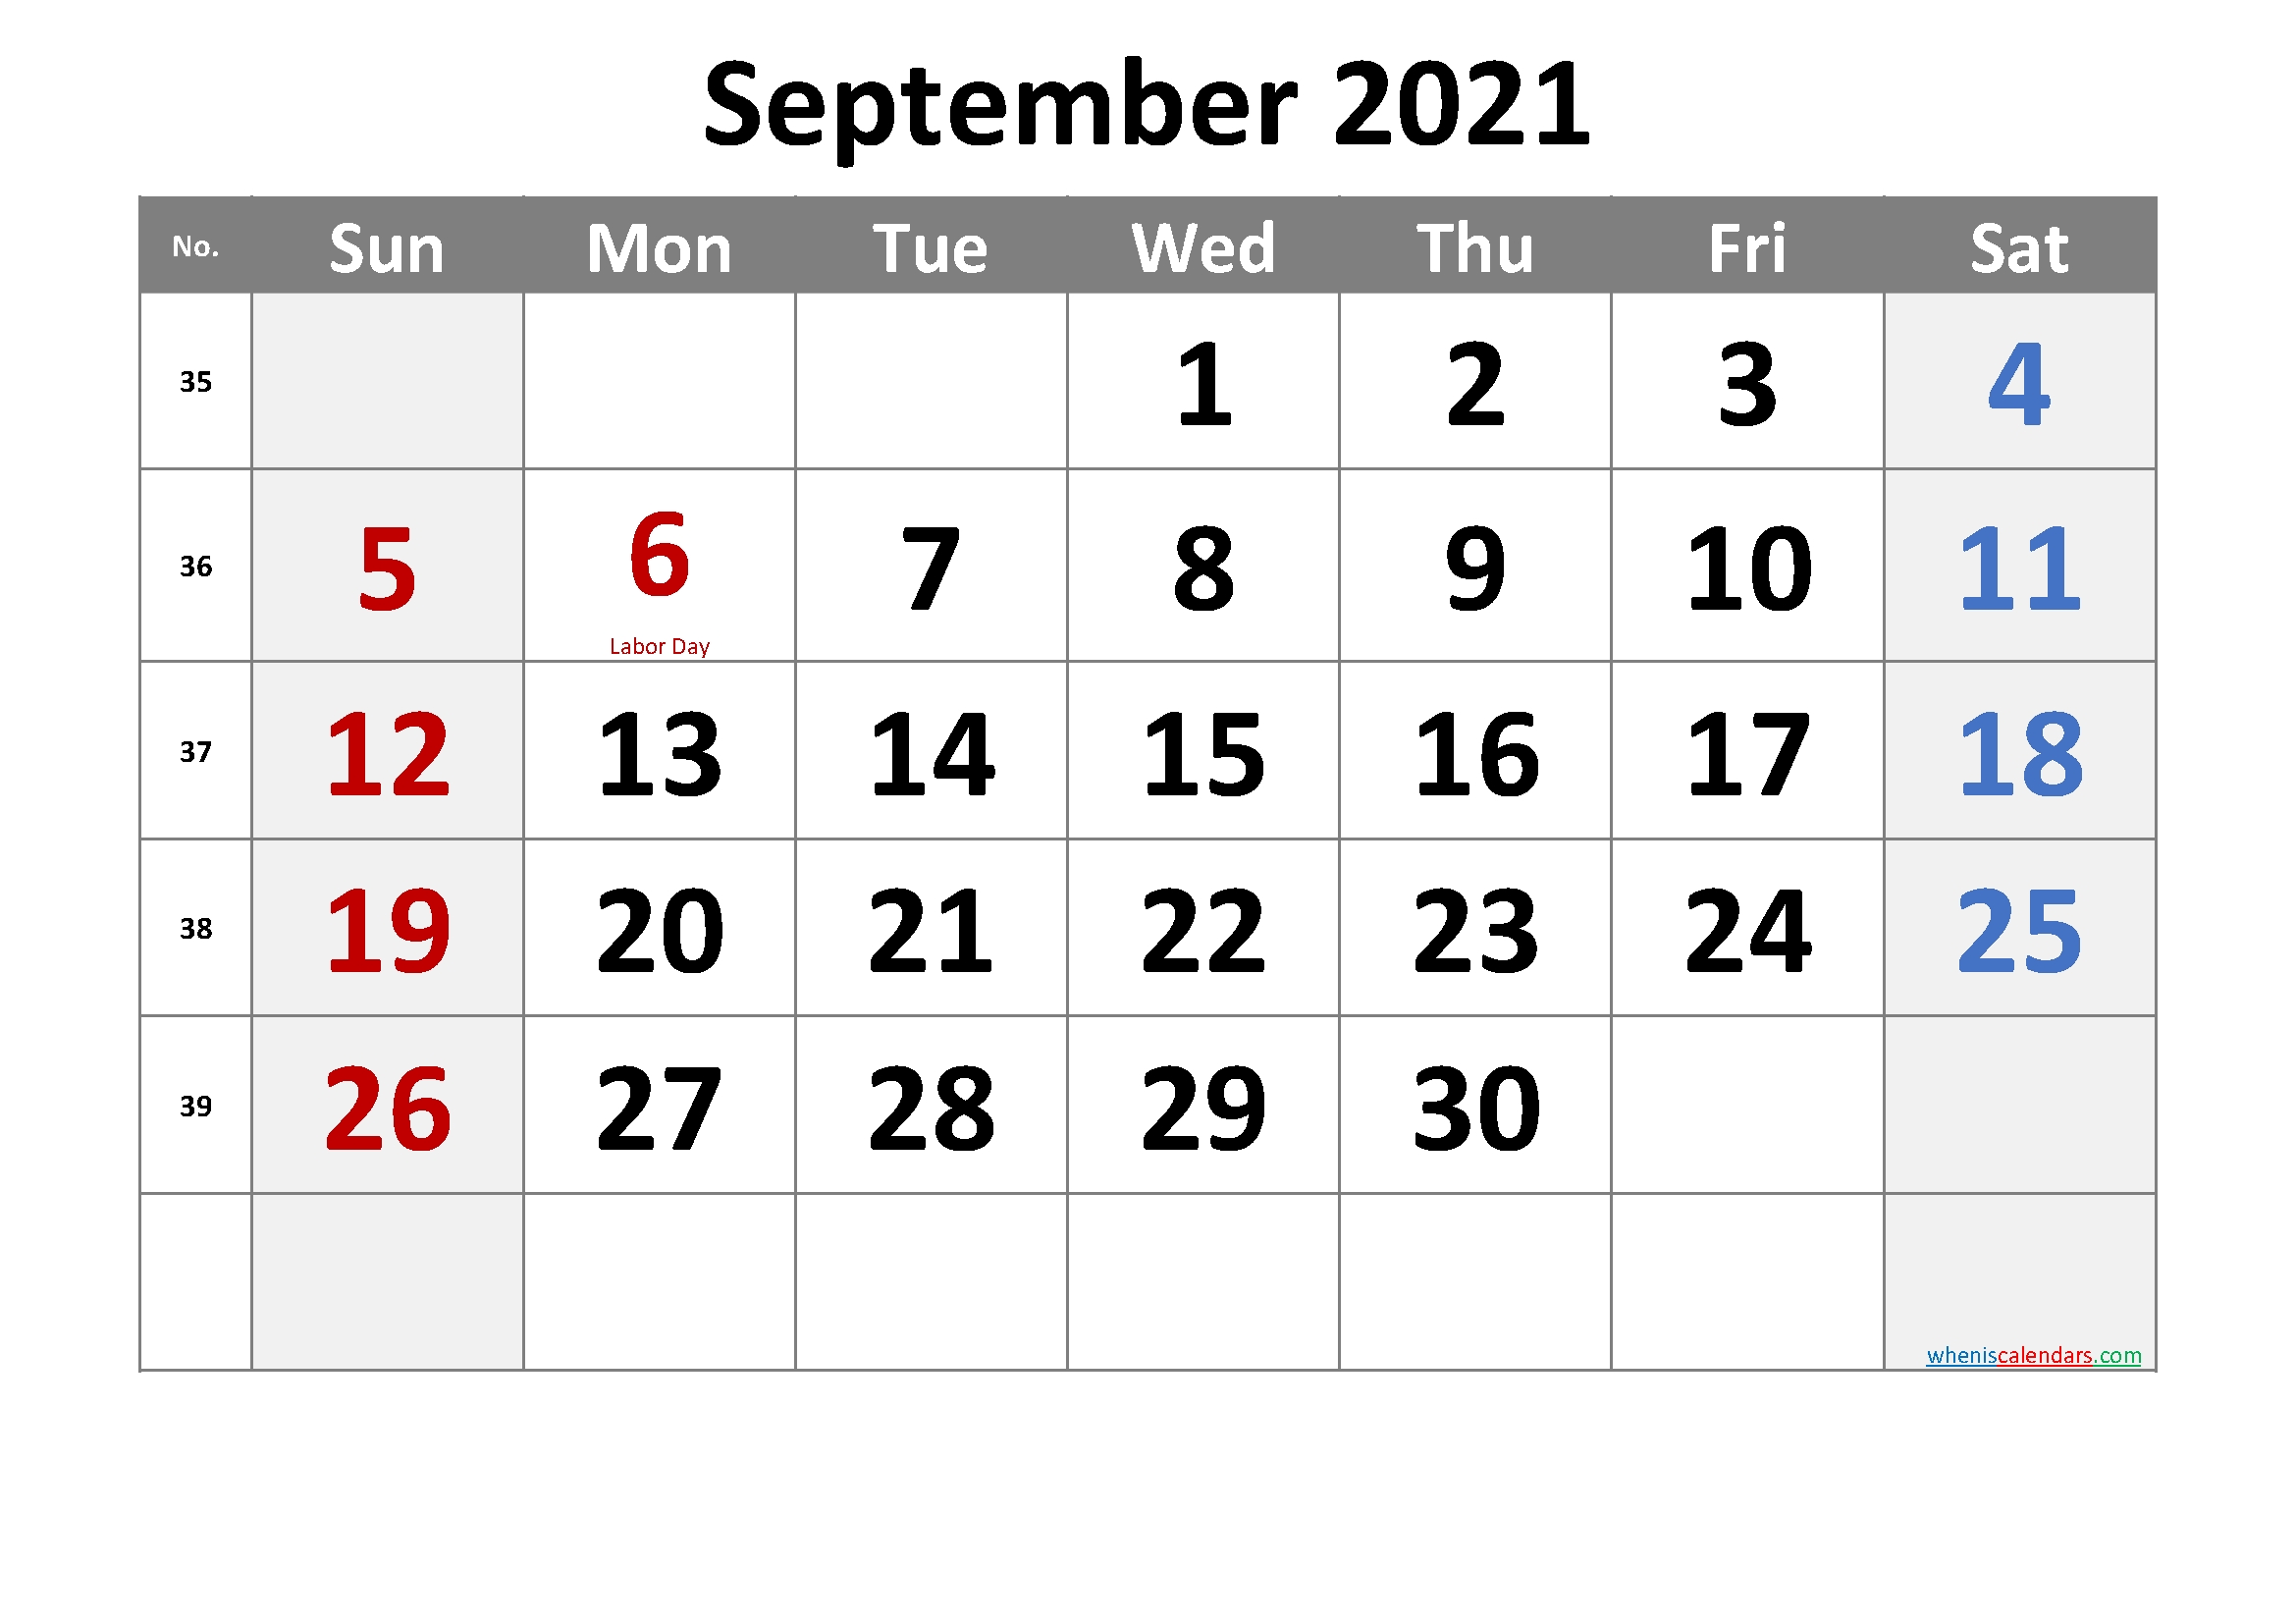 April 2021 Printable Calendar With Holidays - 6 Templates | Free Printable 2020 Calendar With September 2021 Calendar With Holidays Usa